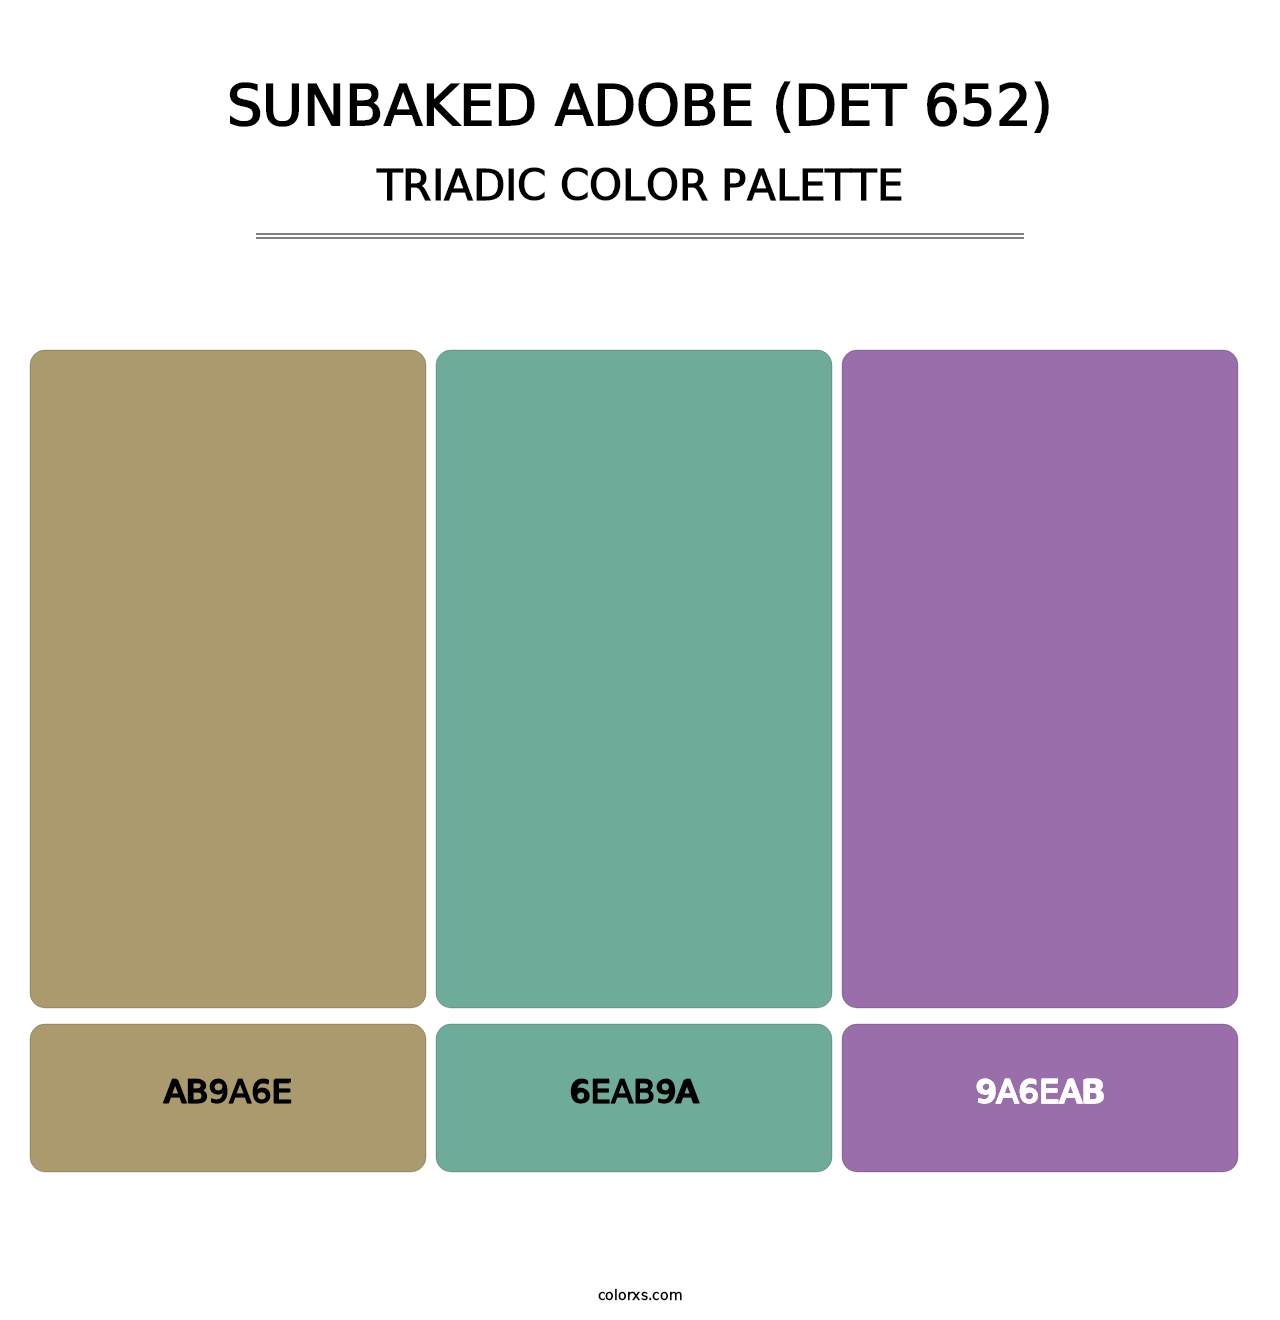 Sunbaked Adobe (DET 652) - Triadic Color Palette